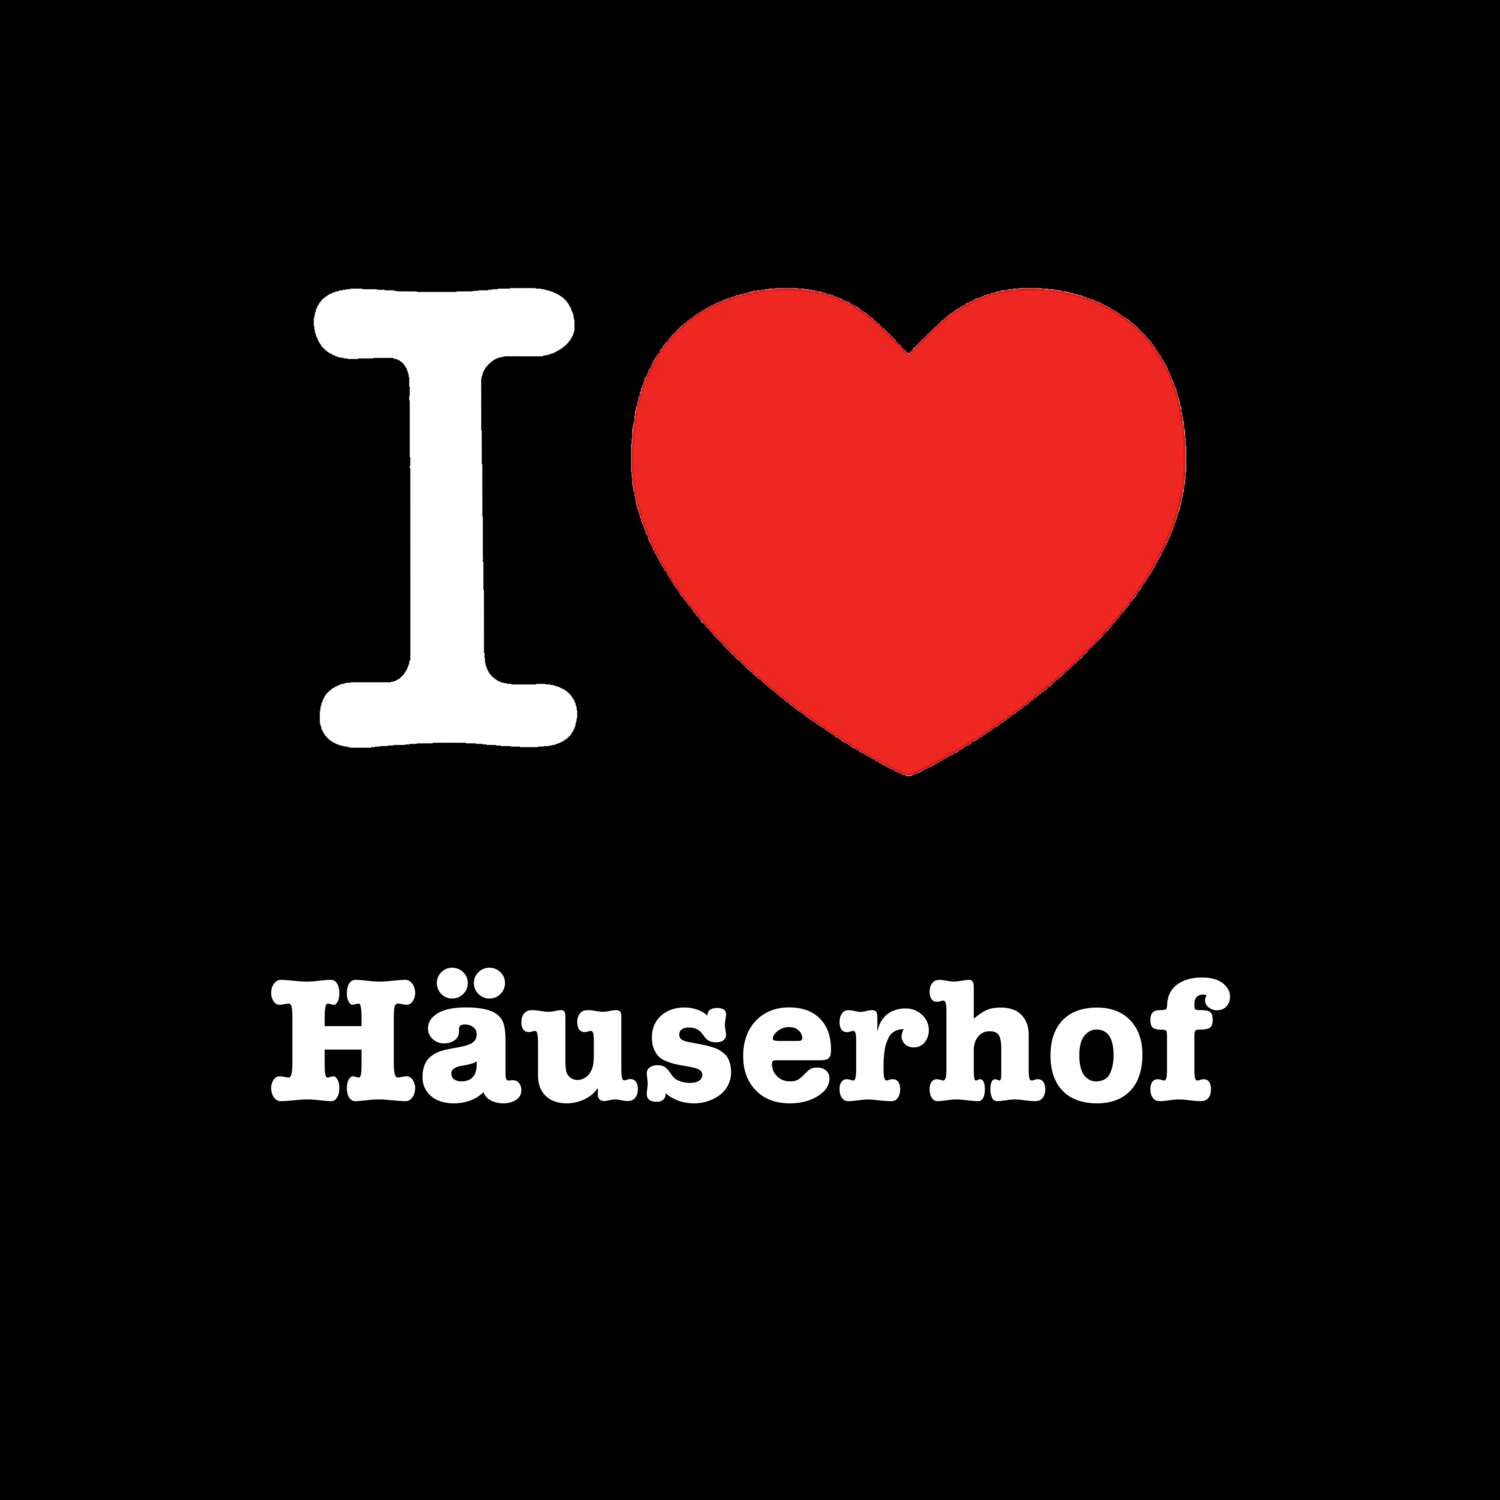 Häuserhof T-Shirt »I love«